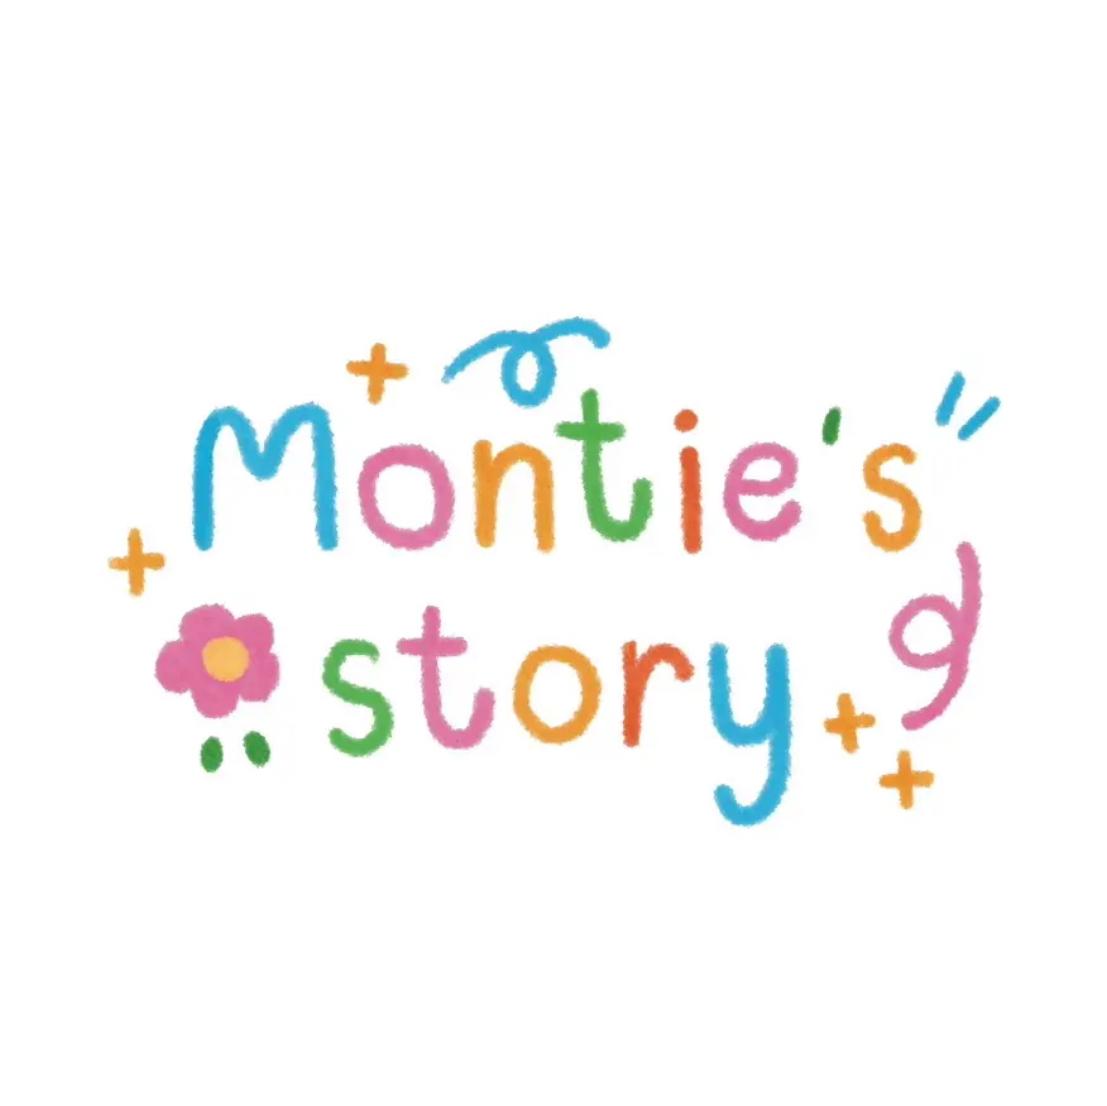 Montie’s story